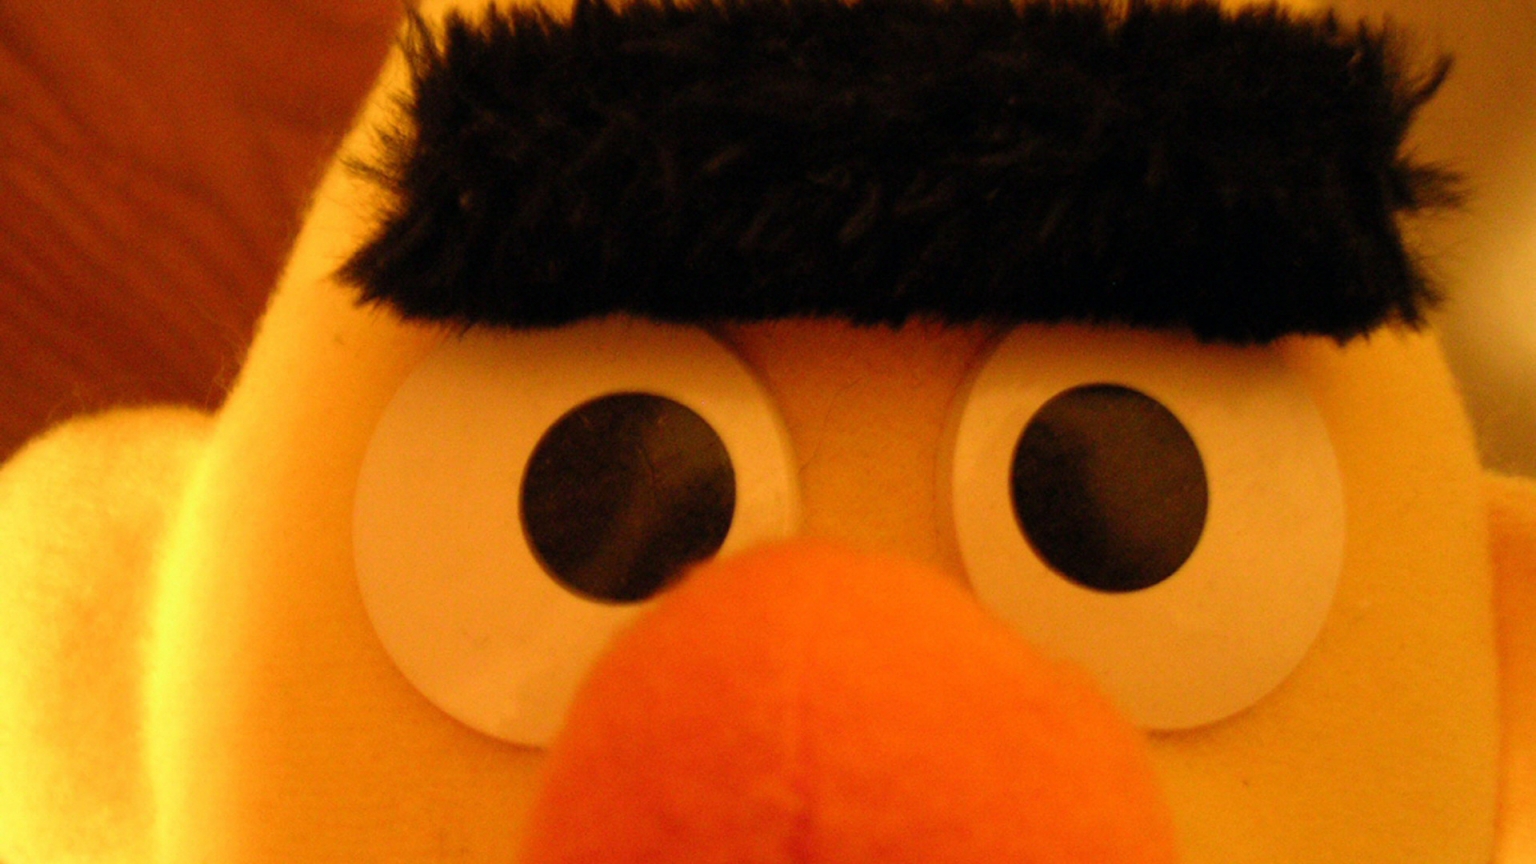 Sesame Street Ernie for 1536 x 864 HDTV resolution